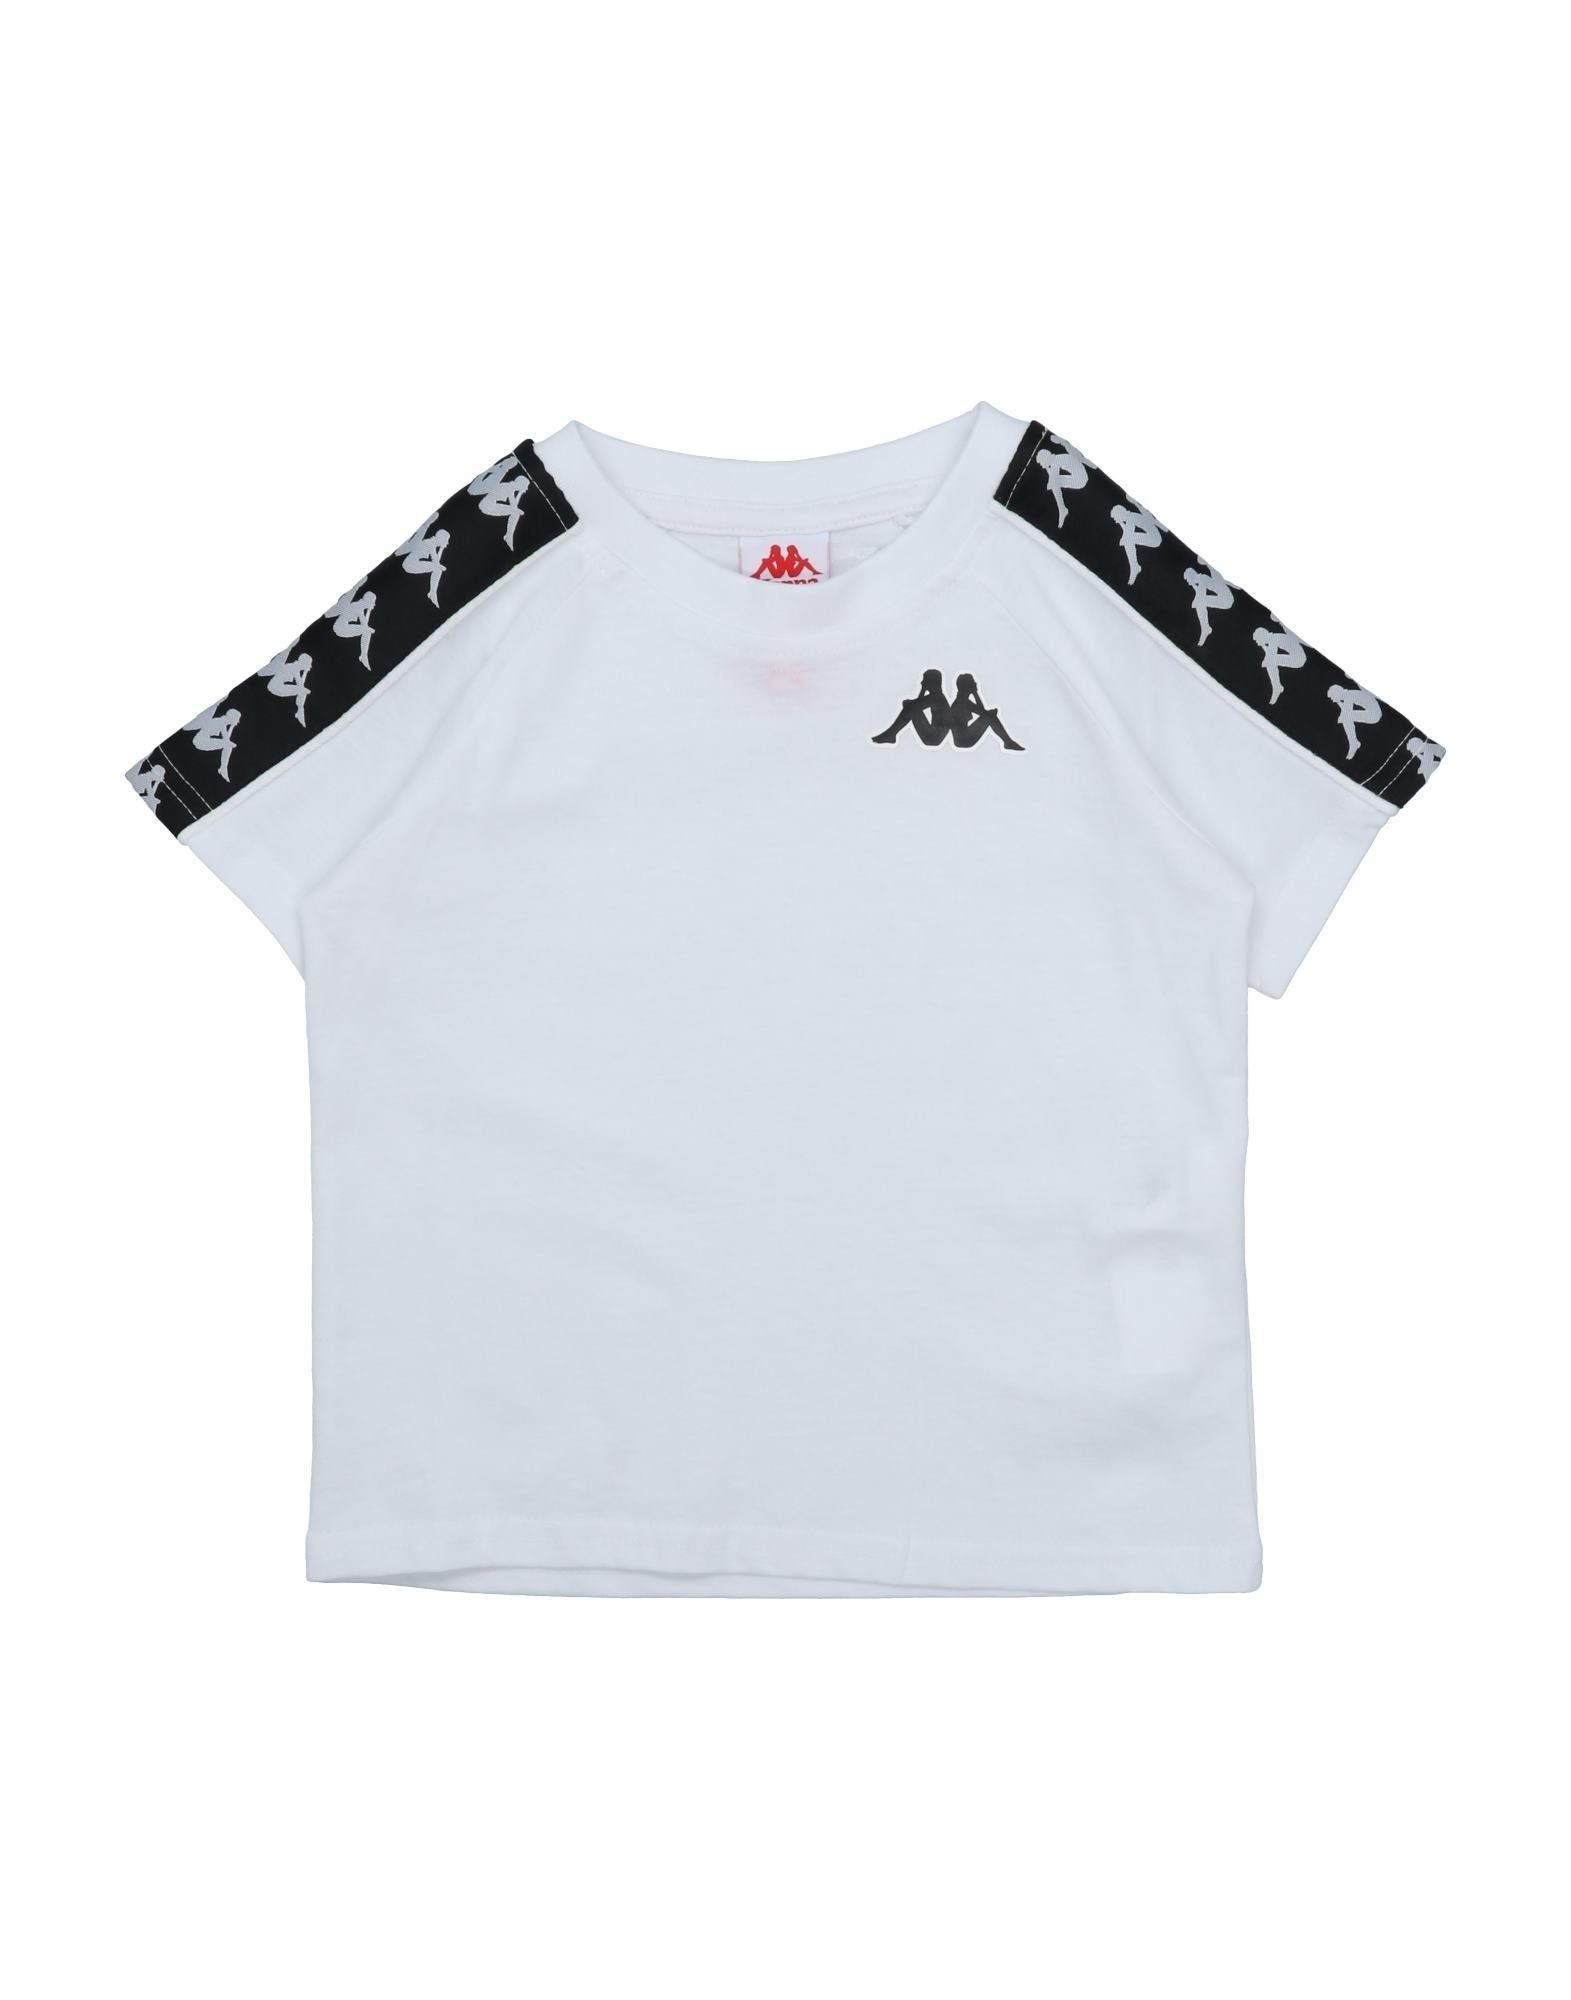 Shop Kappa Toddler Boy T-shirt White Size 5 Cotton